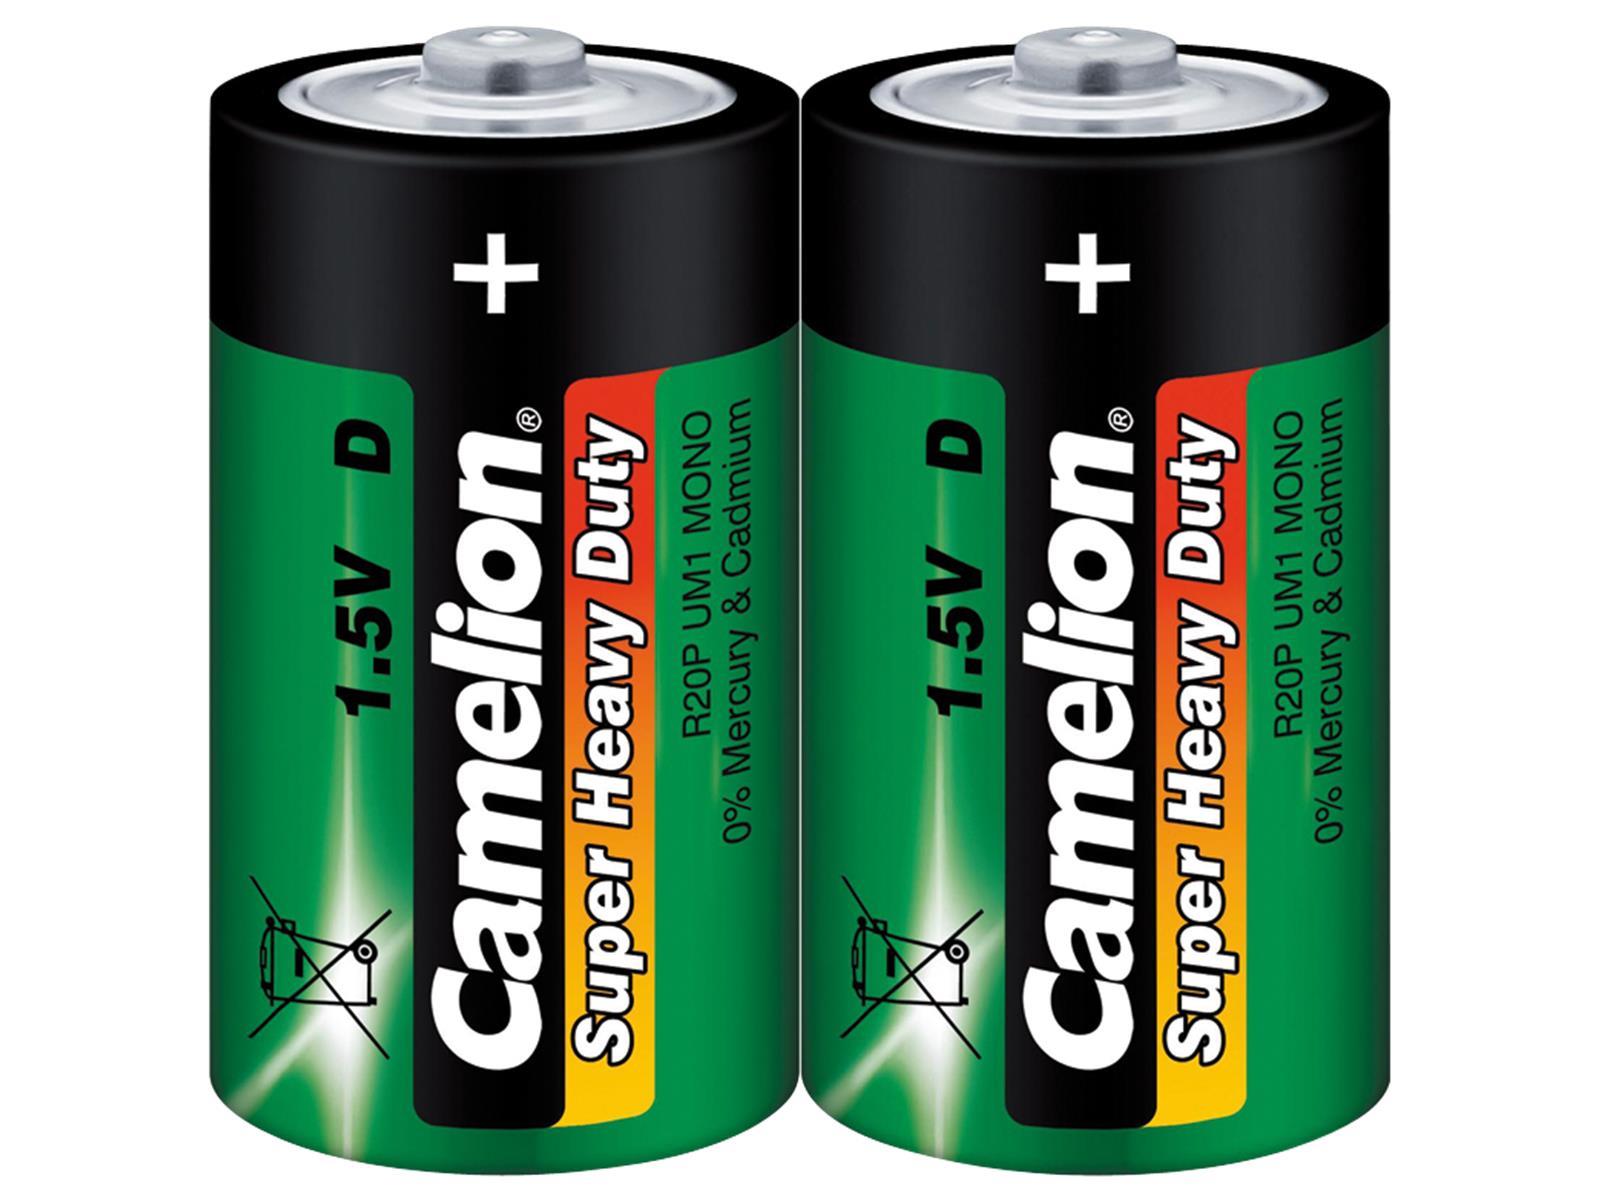 Mono-Batterie CAMELION Super Heavy Duty, 1,5 V, Typ D/R20, 2er Pack